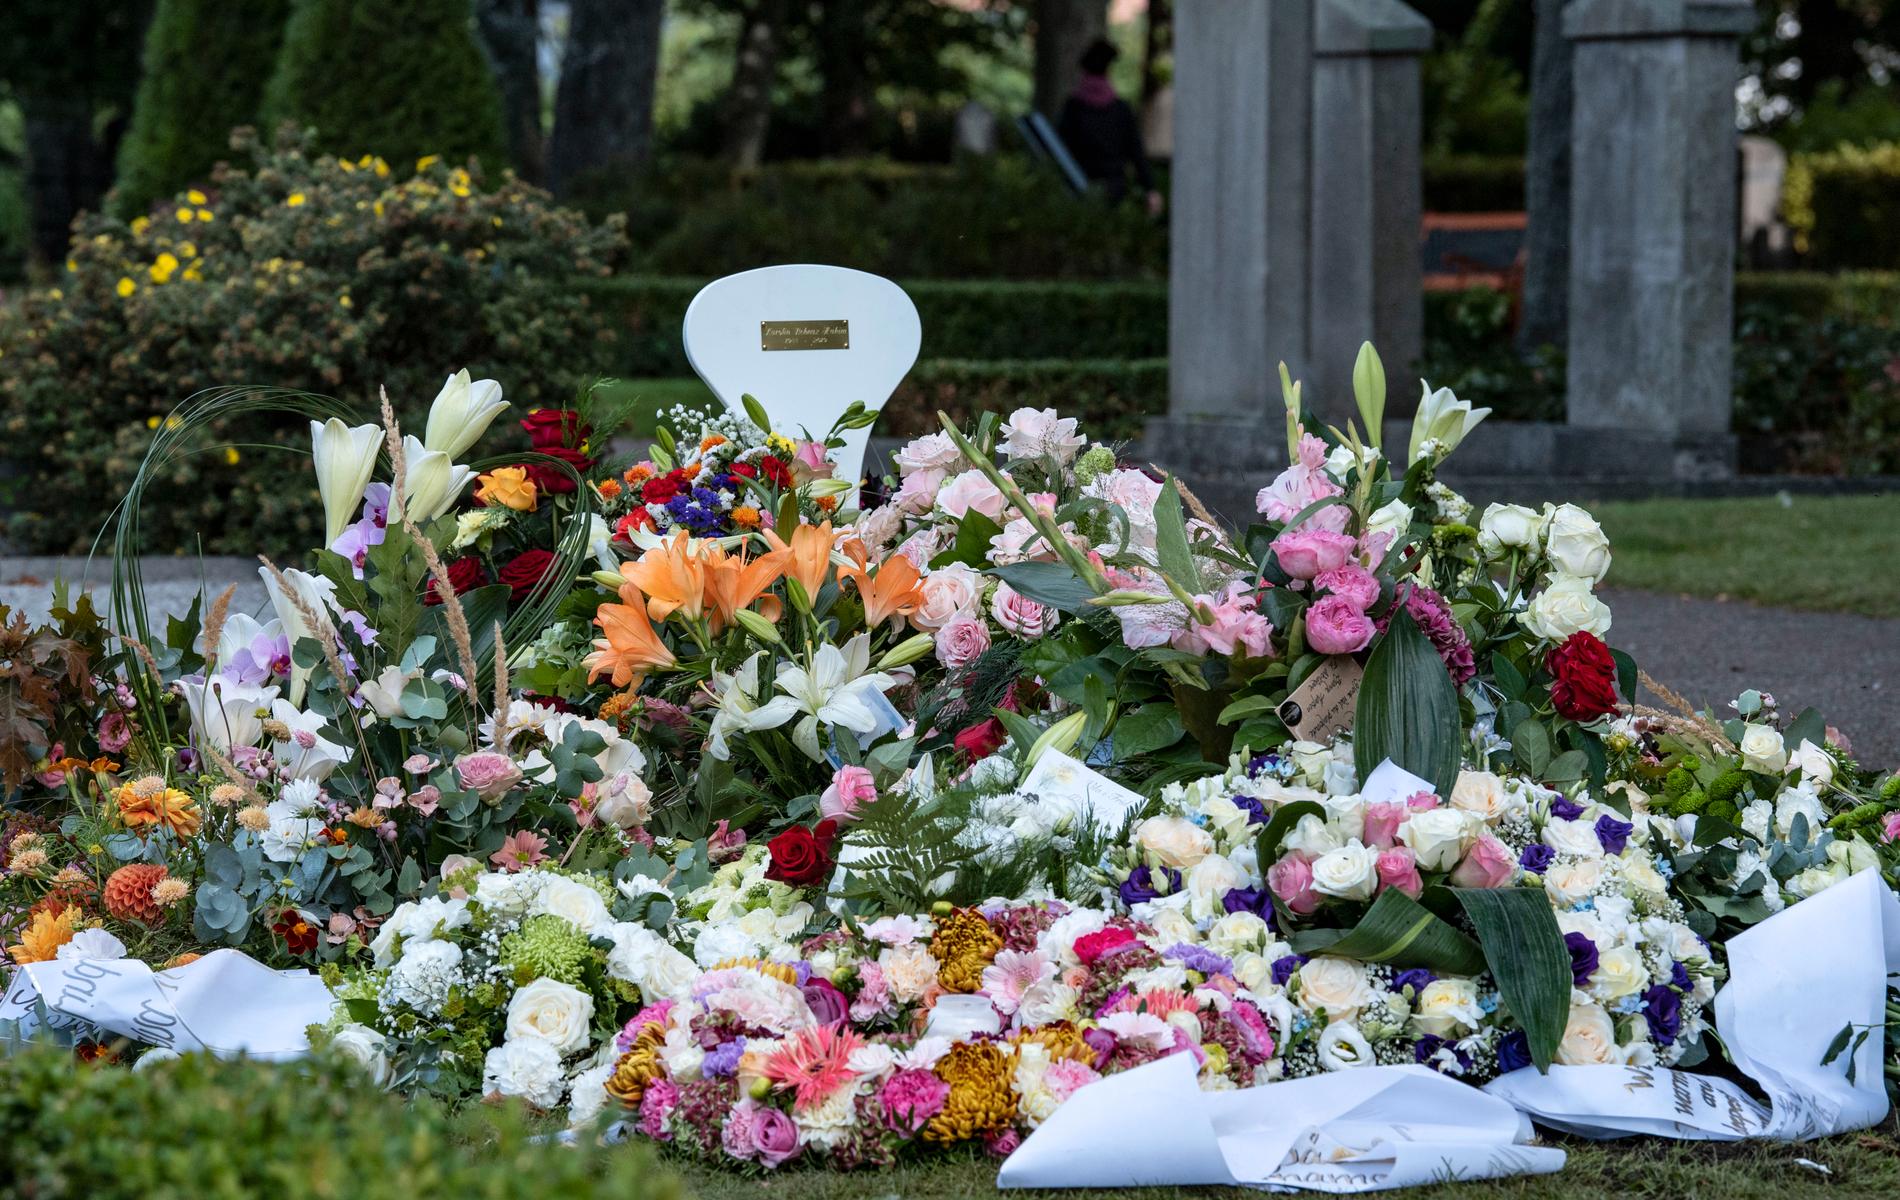 Ett hav av blommor täcker Karolin Hakims grav på S:t Pauli norra kyrkogård i centrala Malmö. 31-åringen sköts ihjäl på öppen gata i Malmö i augusti 2019 med sitt nyfödda barn i famnen. Arkivbild.